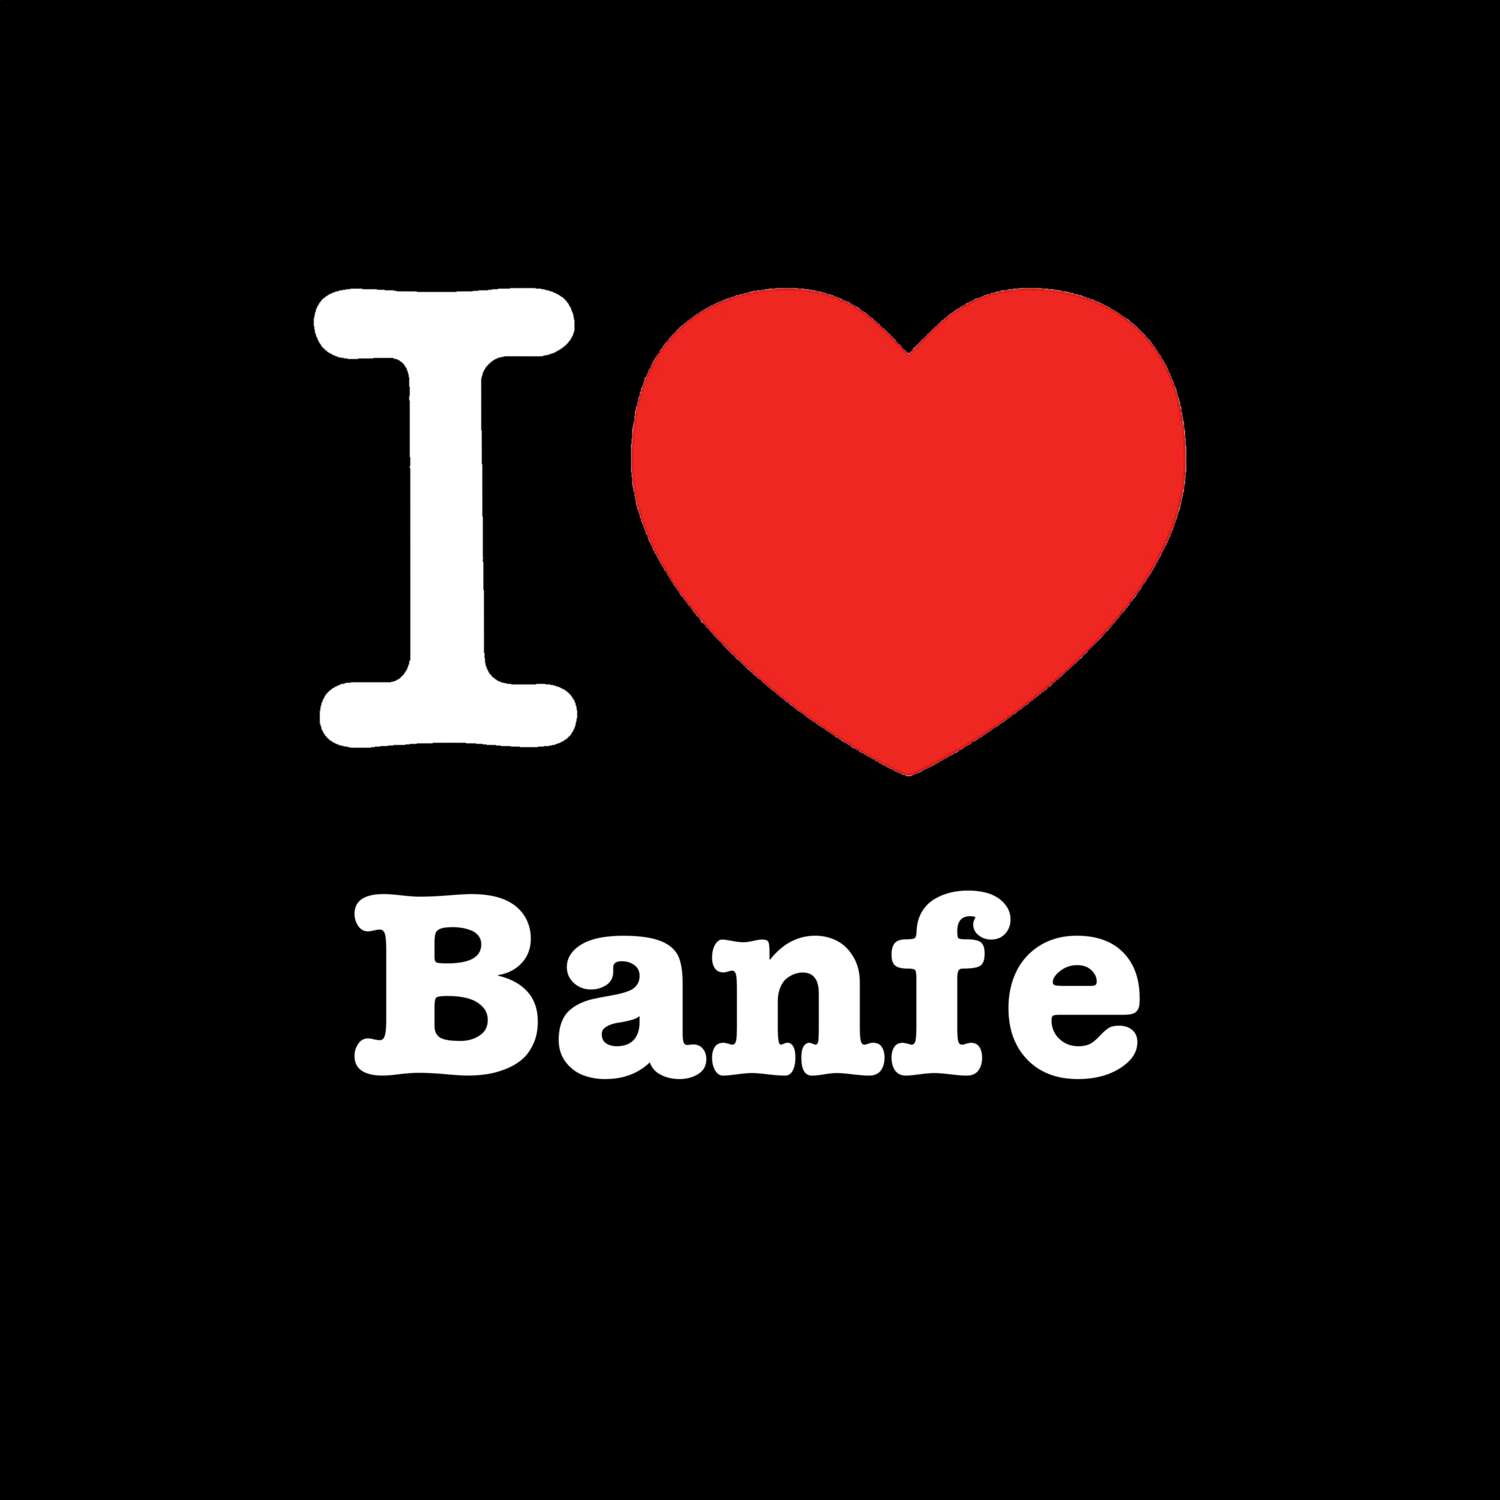 Banfe T-Shirt »I love«